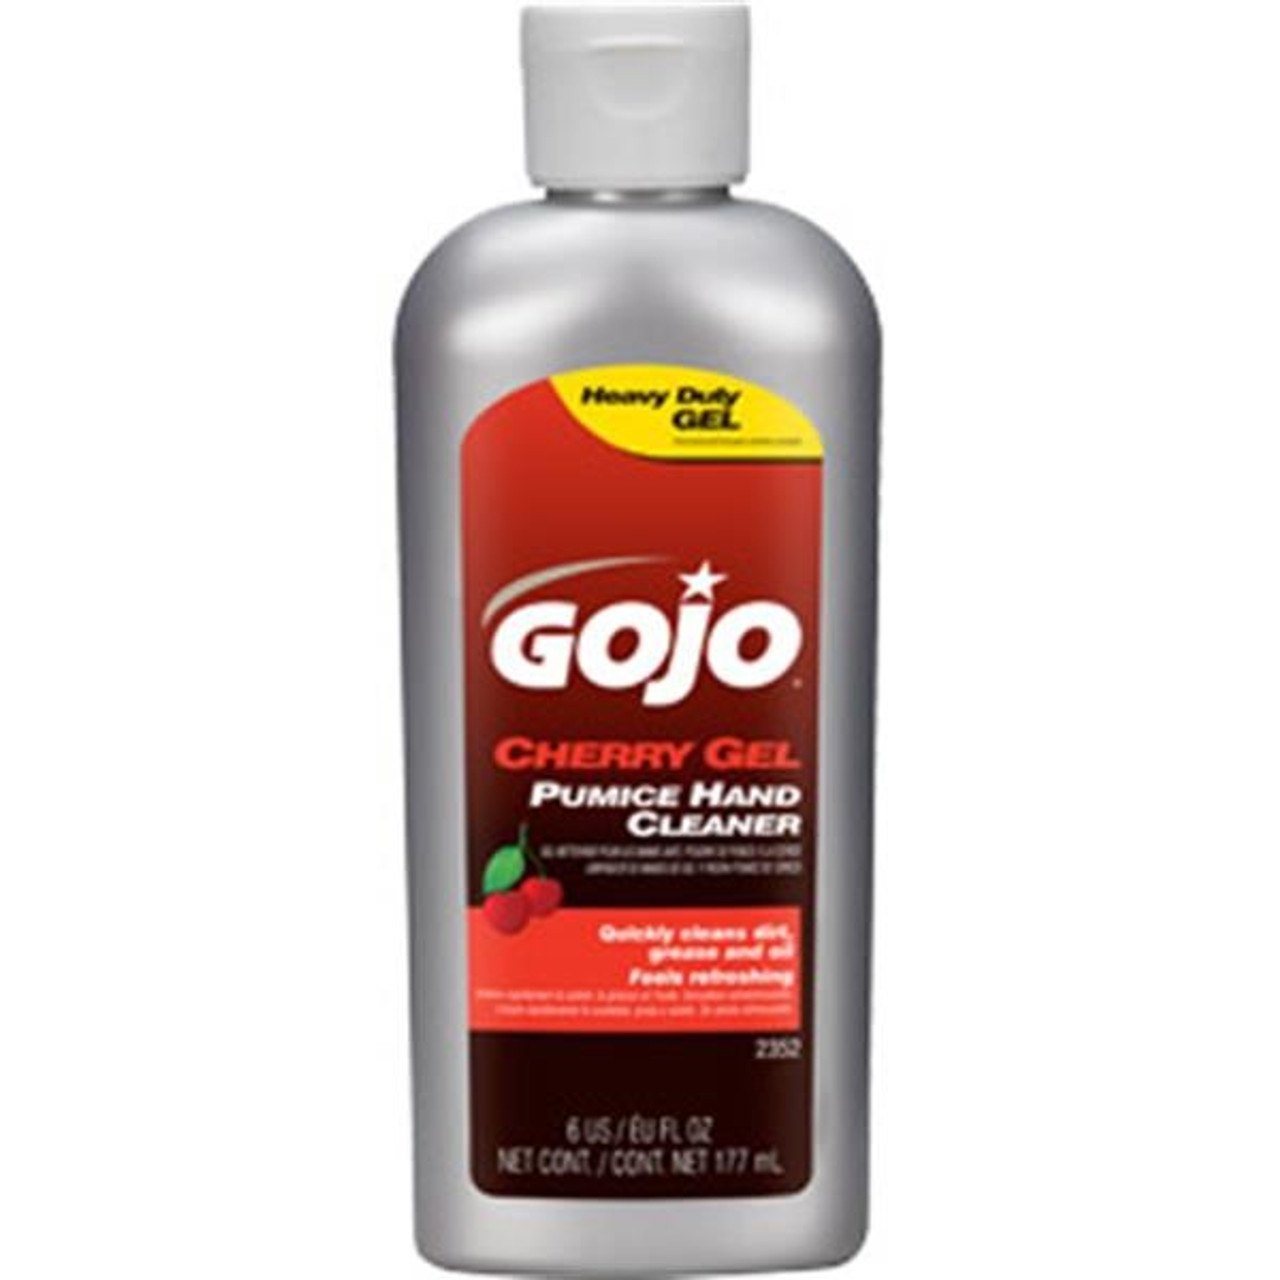 Gojo Cherry Gel Pumice Hand Cleaner, Cherry Scent, 10 oz Bottle